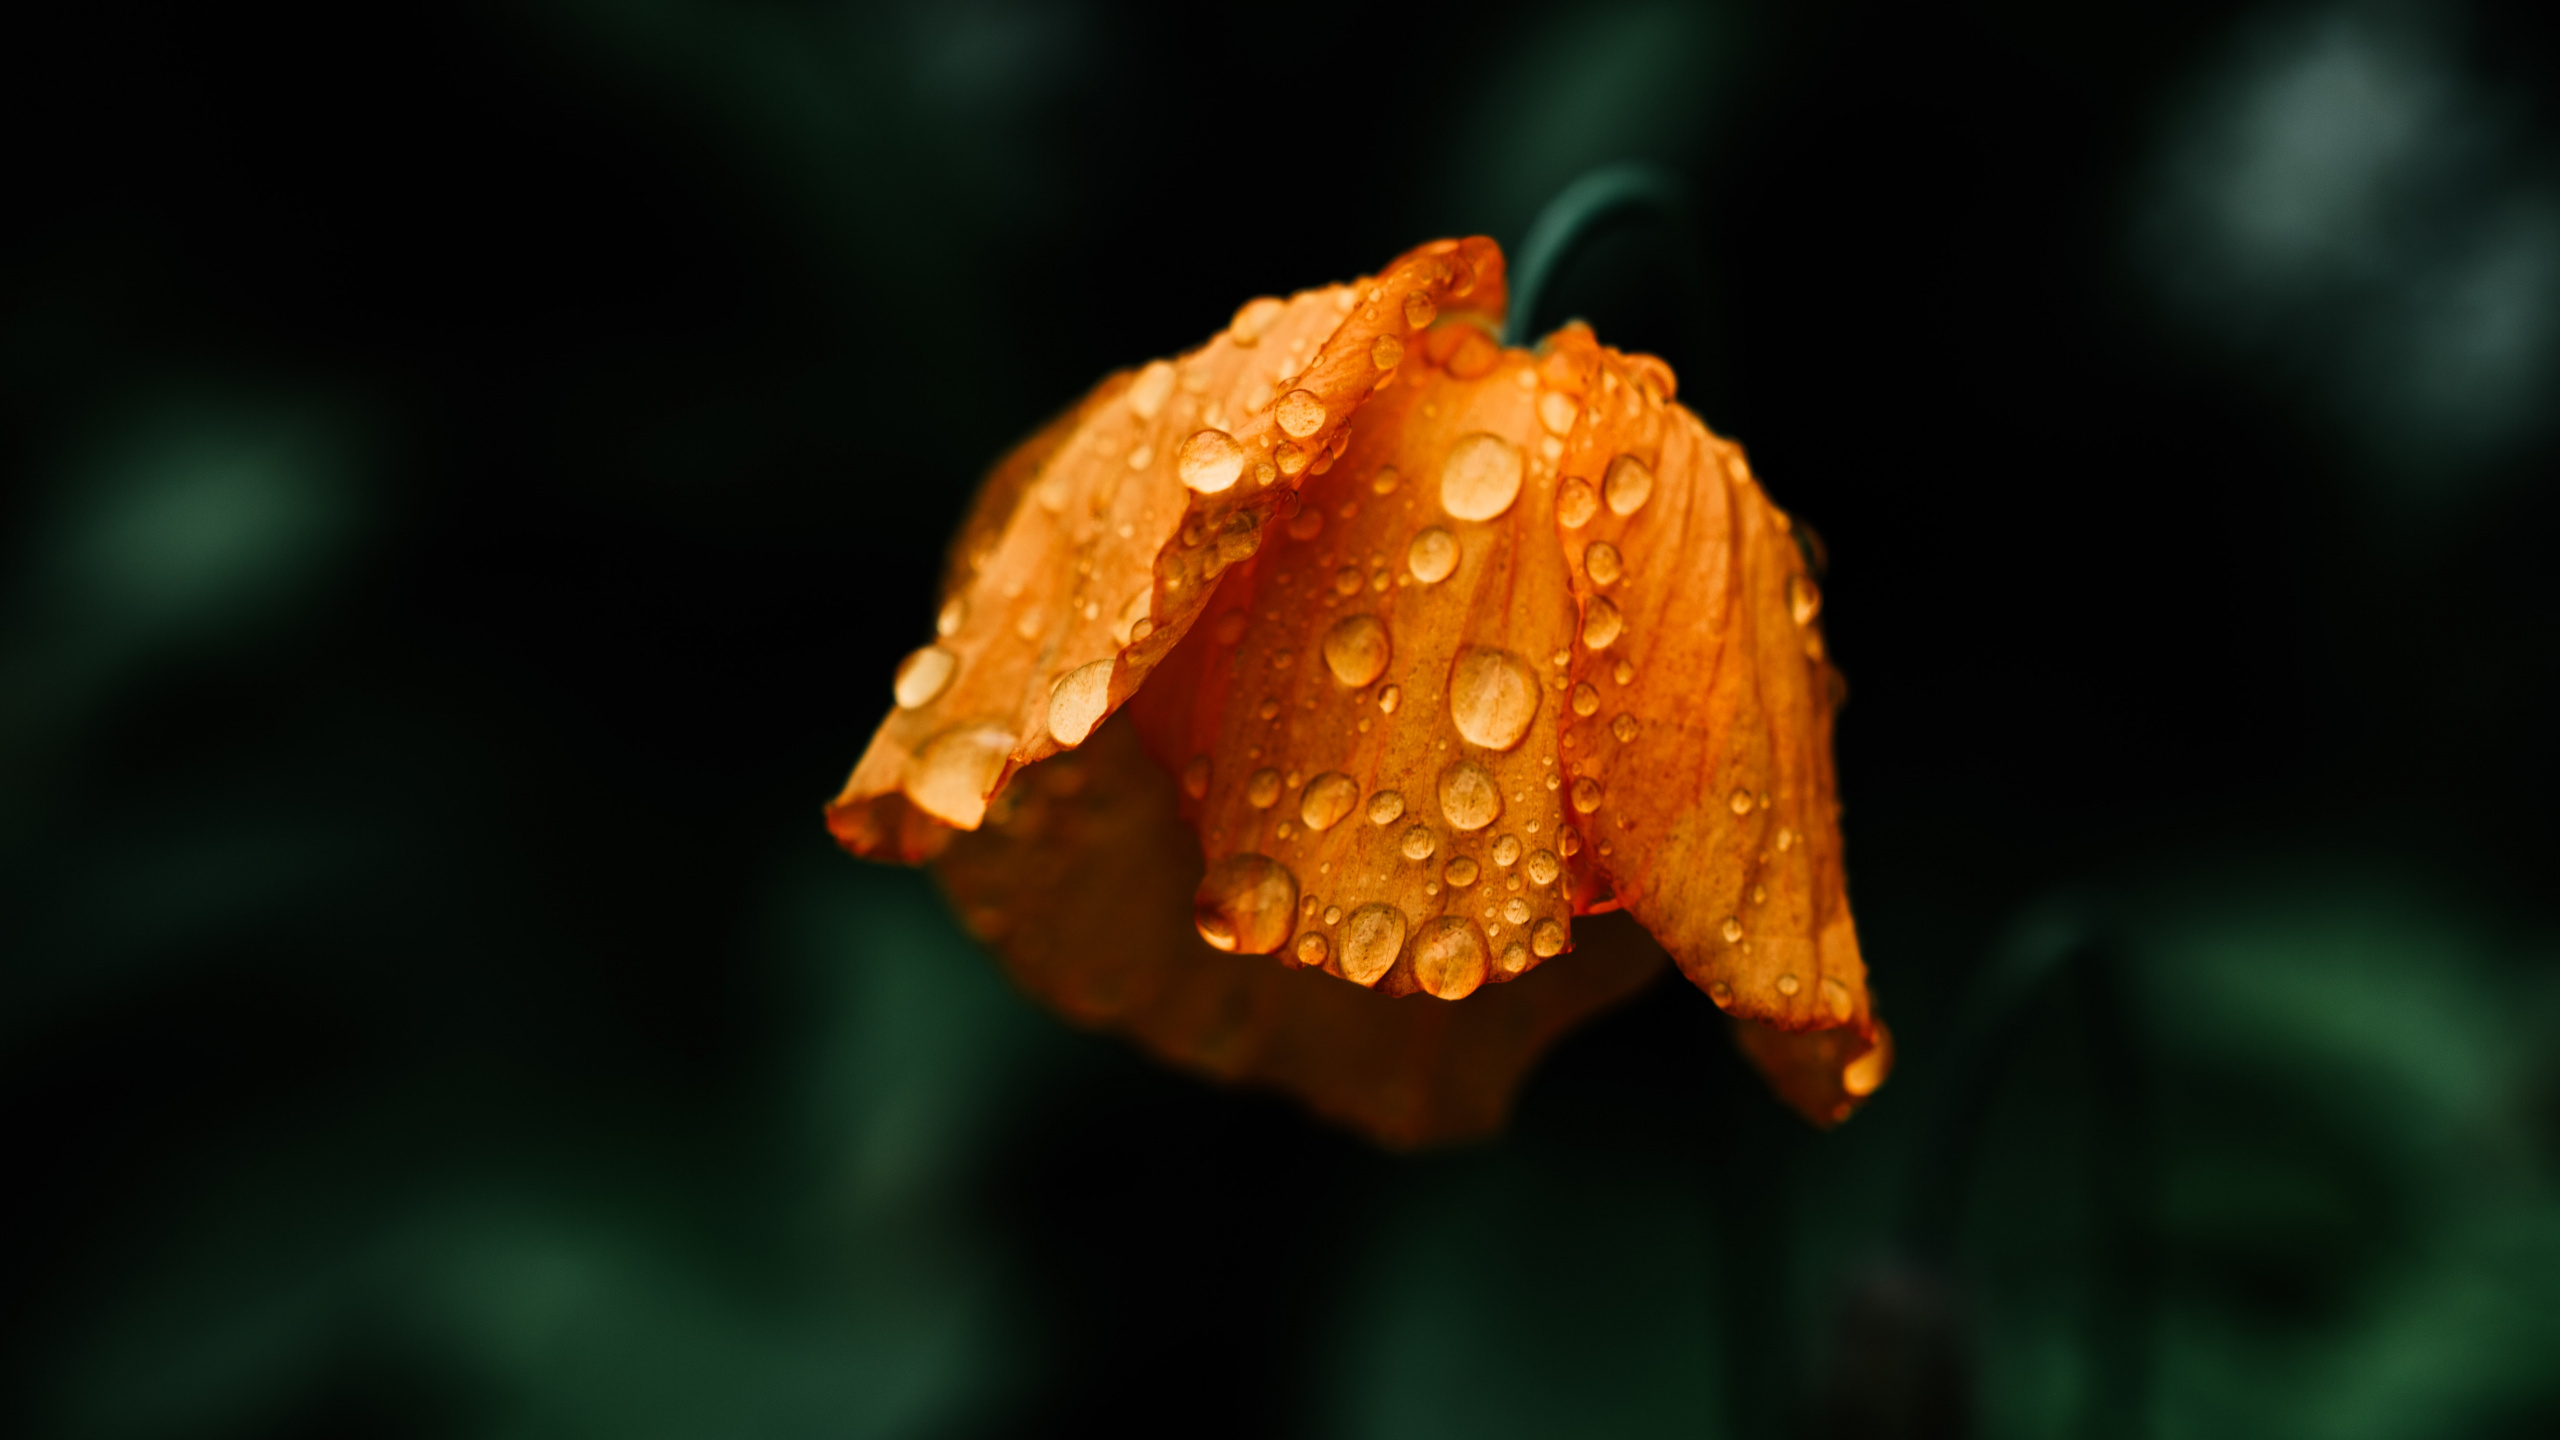 Orange Flower in Tilt Shift Lens. Wallpaper in 2560x1440 Resolution